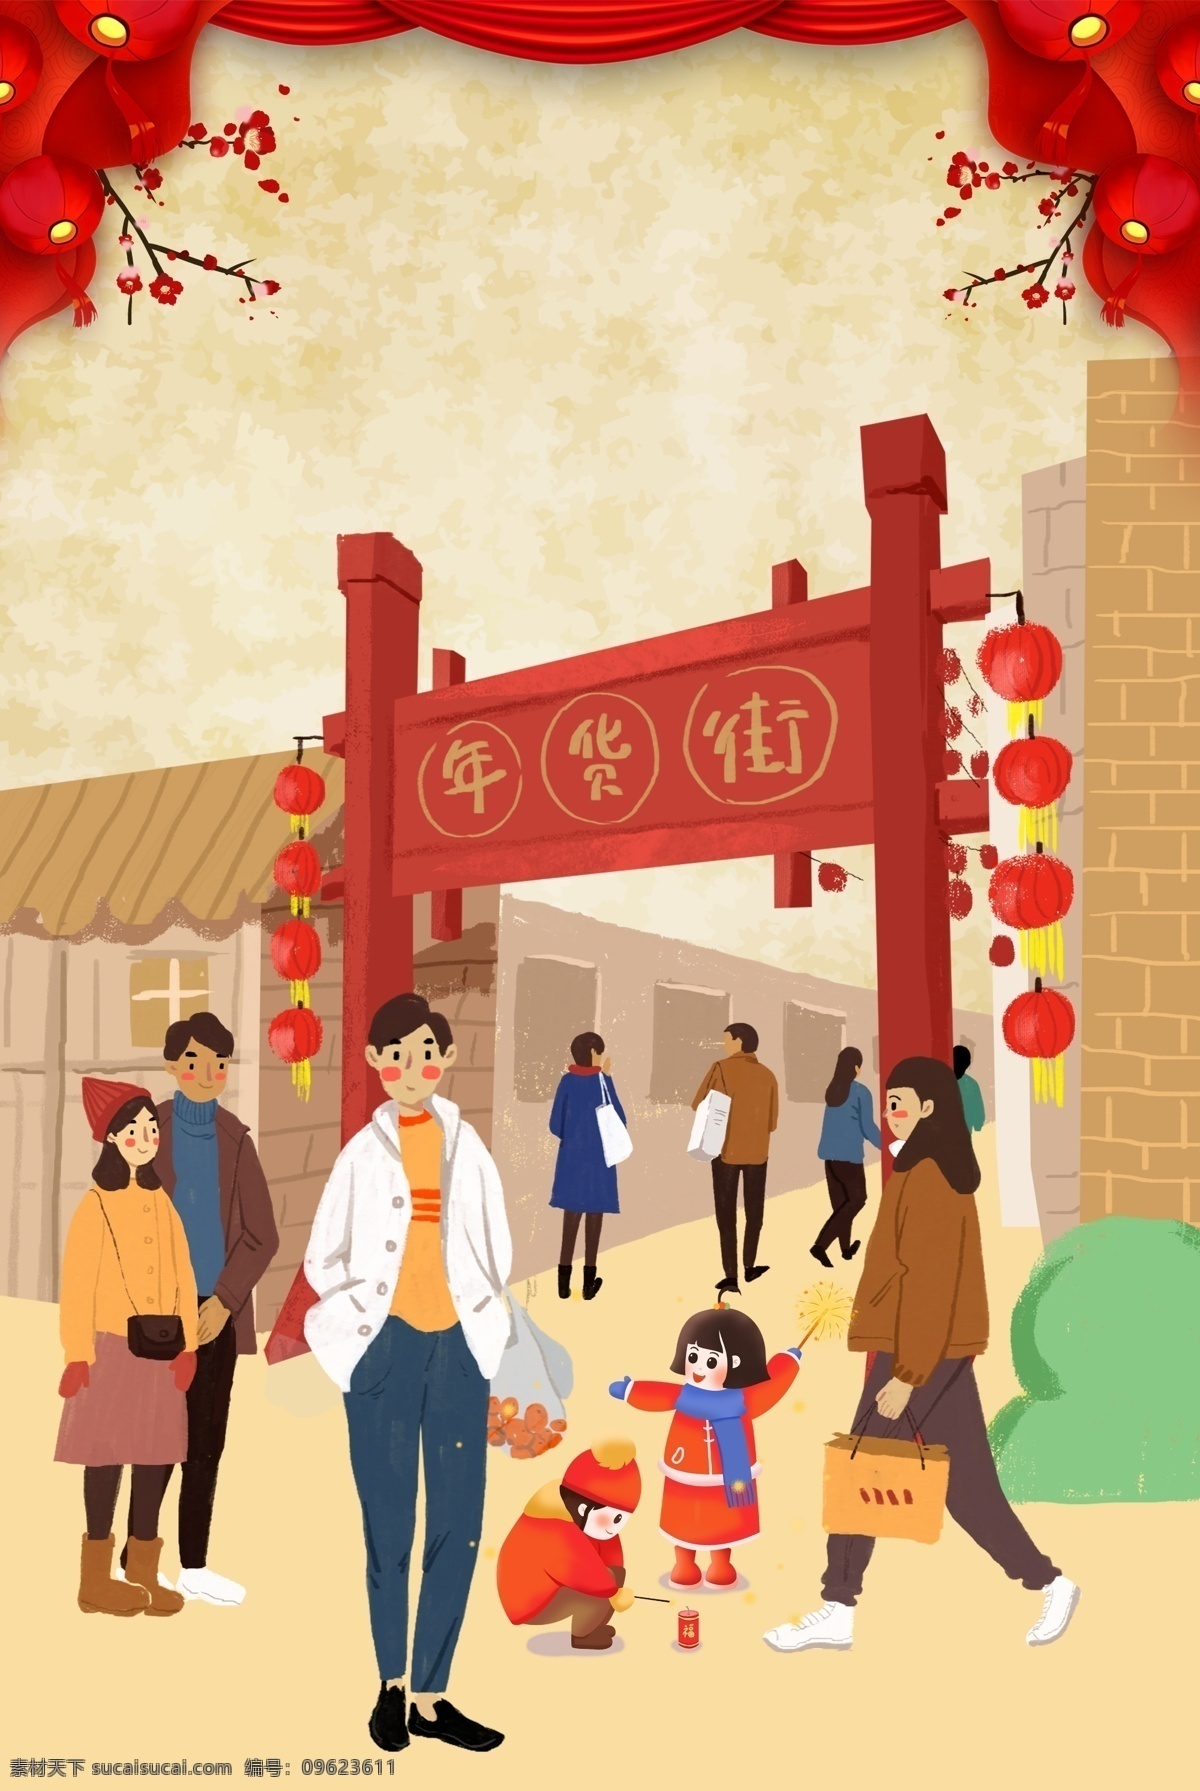 中国 风 猪年 年货 节 插 画风 海报 中国风 年货节 插画风 梅花 灯笼 幕布